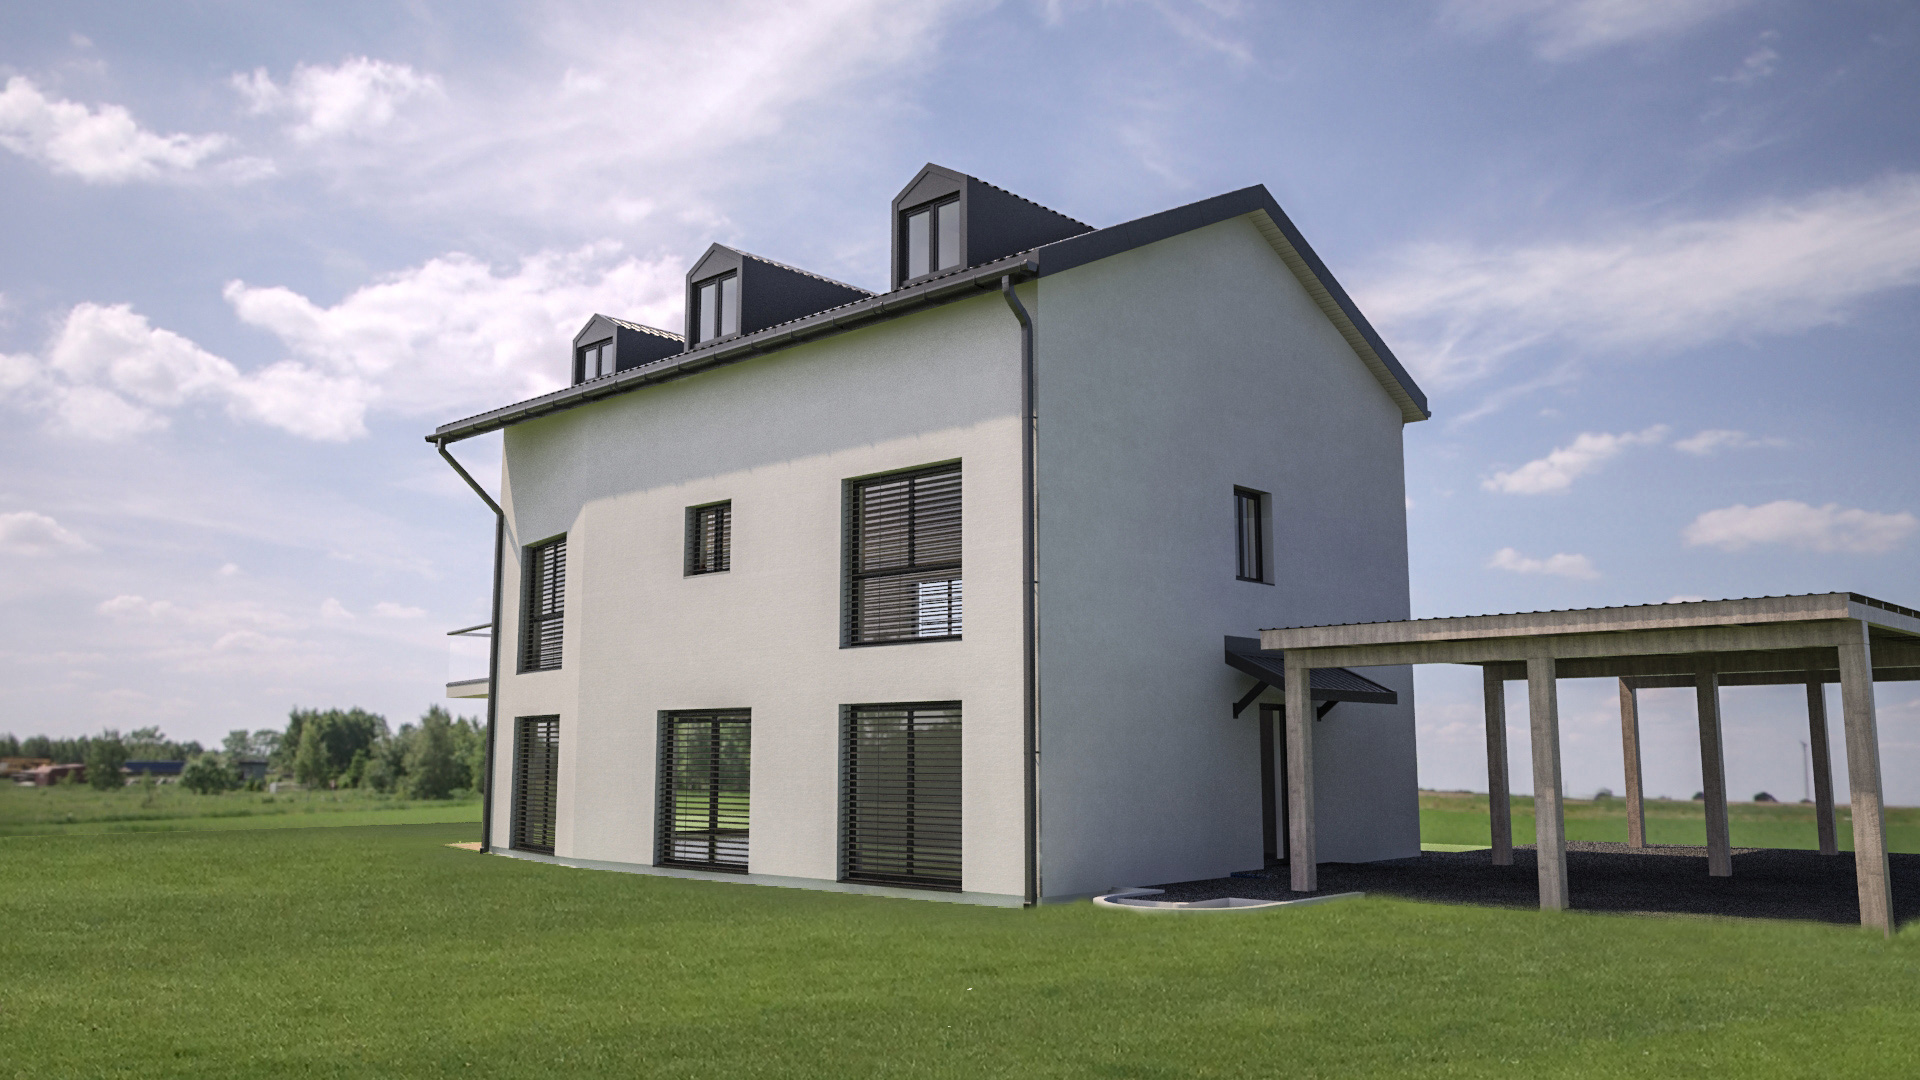 C3 Concept, visualisation 3D à Bulle. cressier villa 2 appartements extérieur